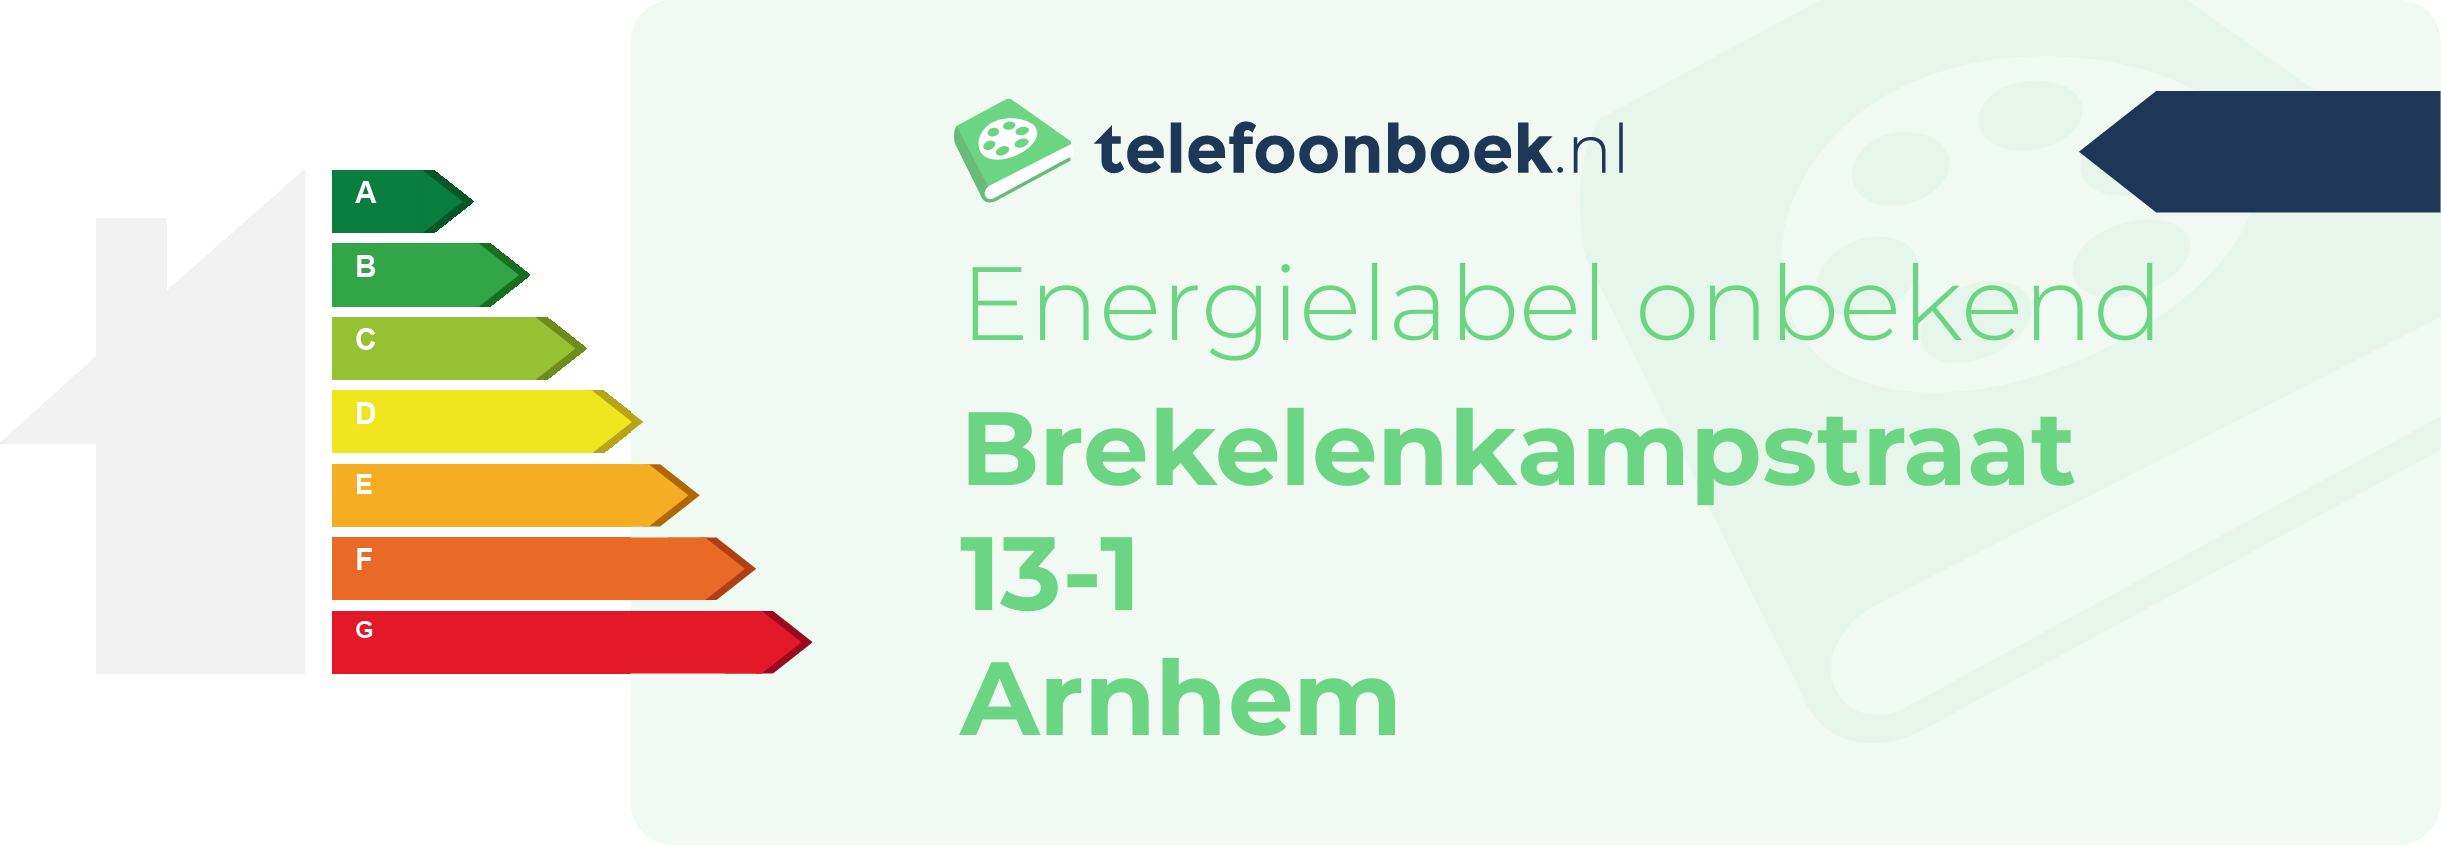 Energielabel Brekelenkampstraat 13-1 Arnhem